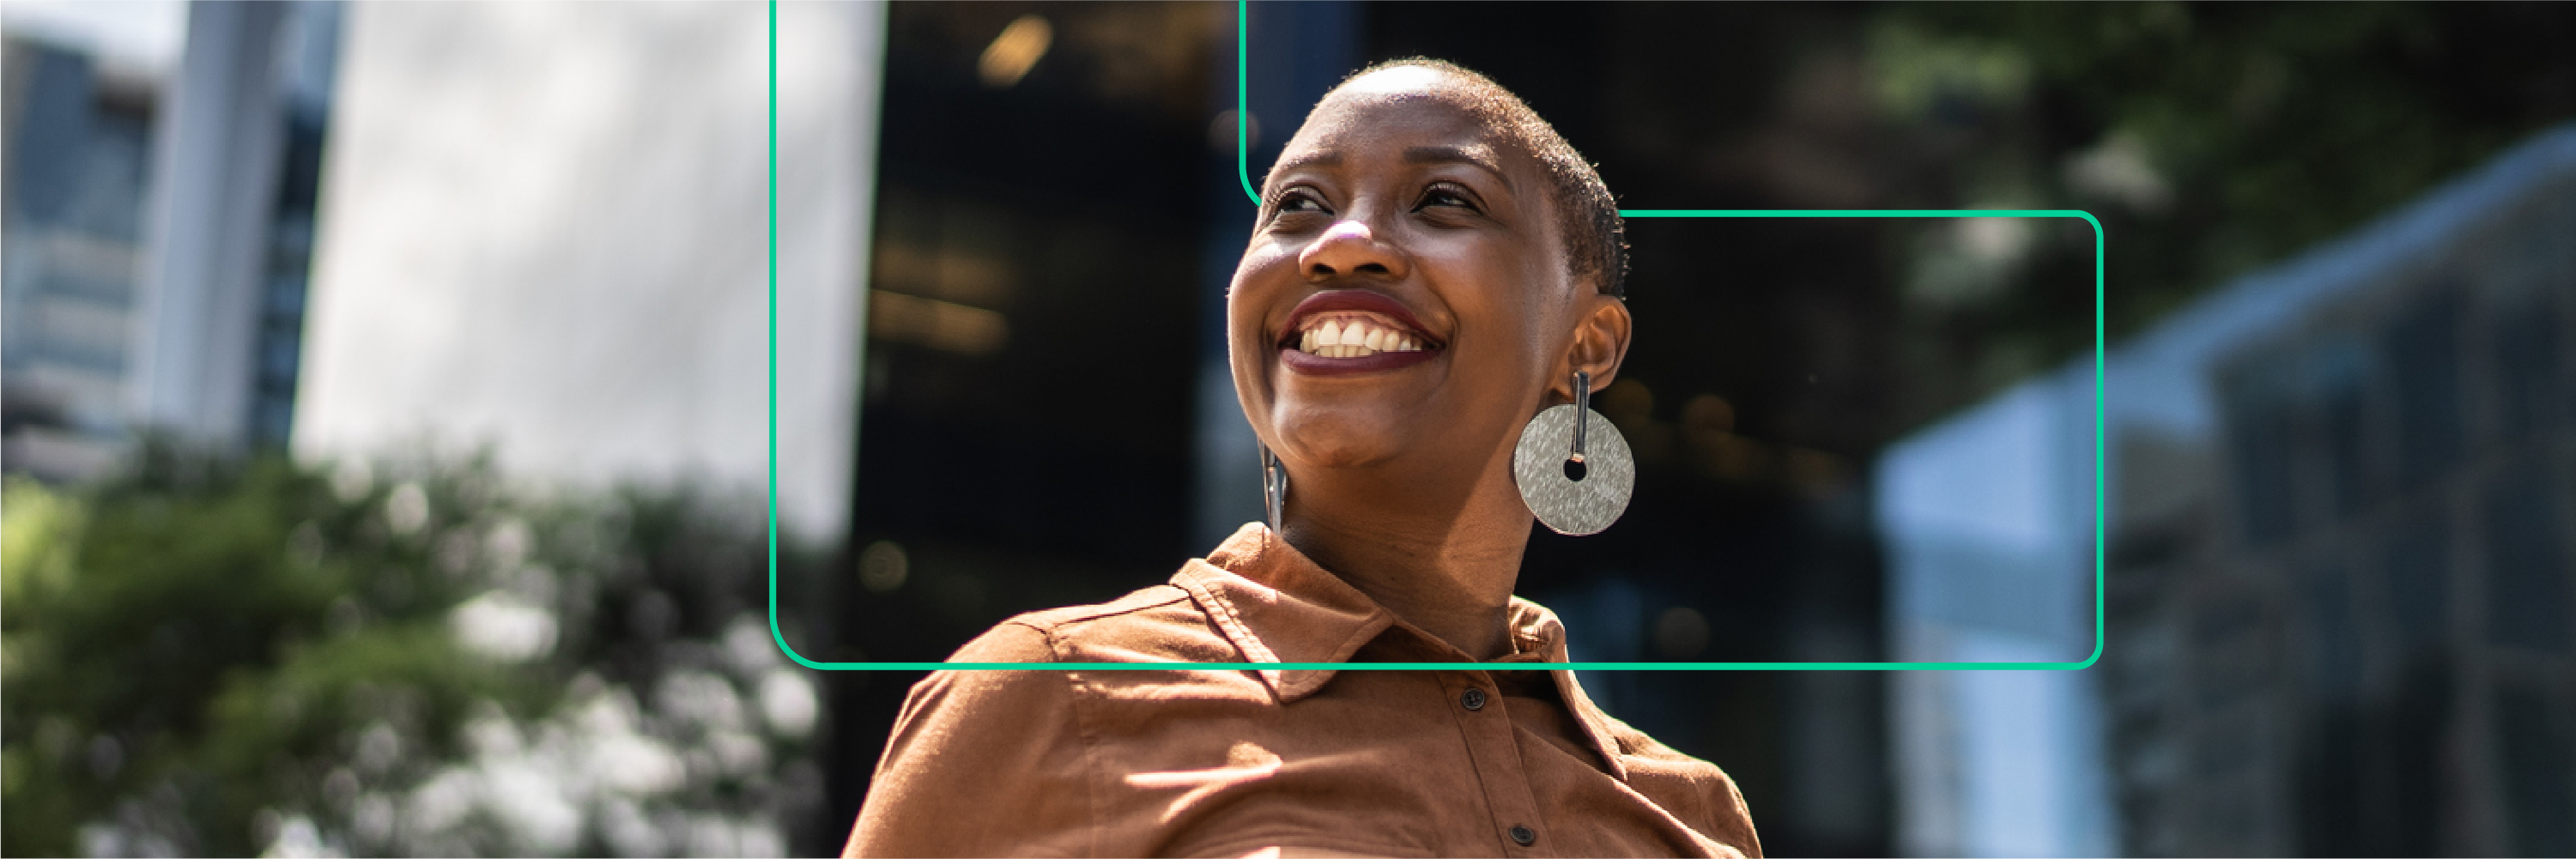 Güneşe bakarken gülümseyen siyahi bir kadının fotoğrafı. Ayraç, genellikle kodlamayla ilişkilendirilen ve Women Techmaker tarafından, kadınları beklentilerin ötesine geçip bir sonrakinin ötesine taşımayı amaçlayan, normları genişleten ve sektörü yeniden tanımlayan bir sembol olan köşeyi de içeriyor.